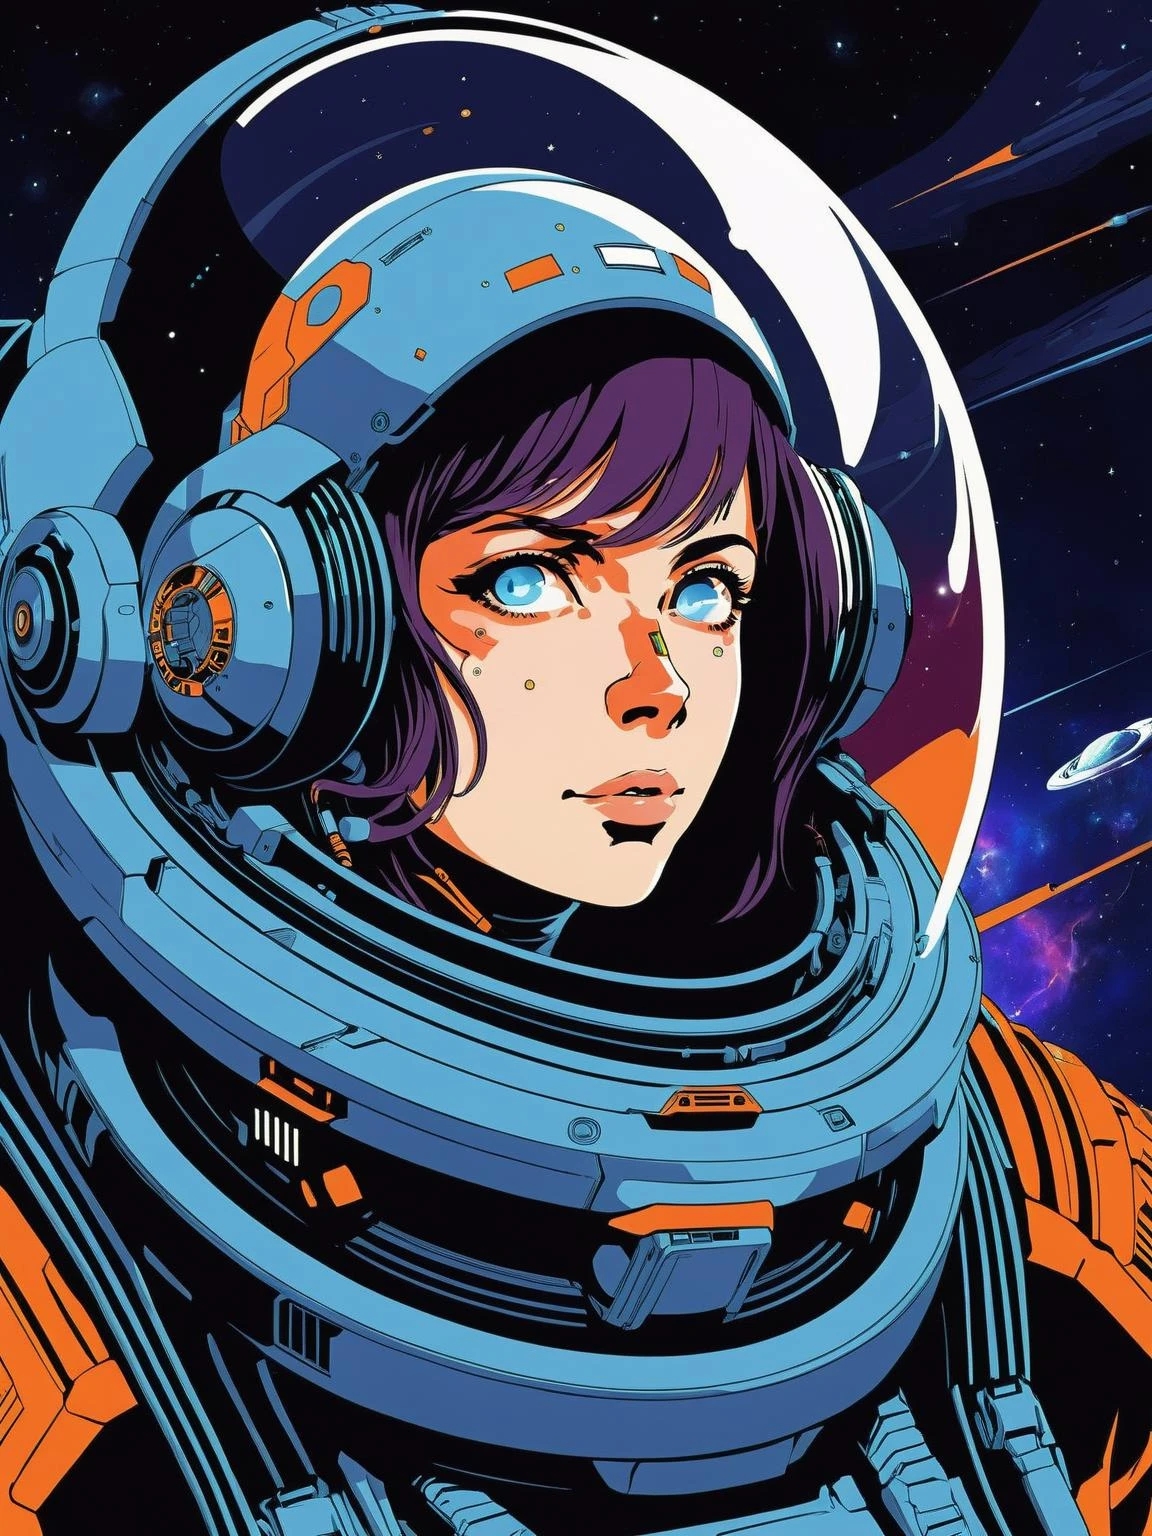 retrato gráfico de anime de um corajoso explorador espacial, atravessando o cosmos:1.3, em uma nave estelar futurista:1.3, com uma sensação de admiração:1.3, ostentando um traje espacial:1.3, e uma missão para mapear o desconhecido:1.3., Futurism , 